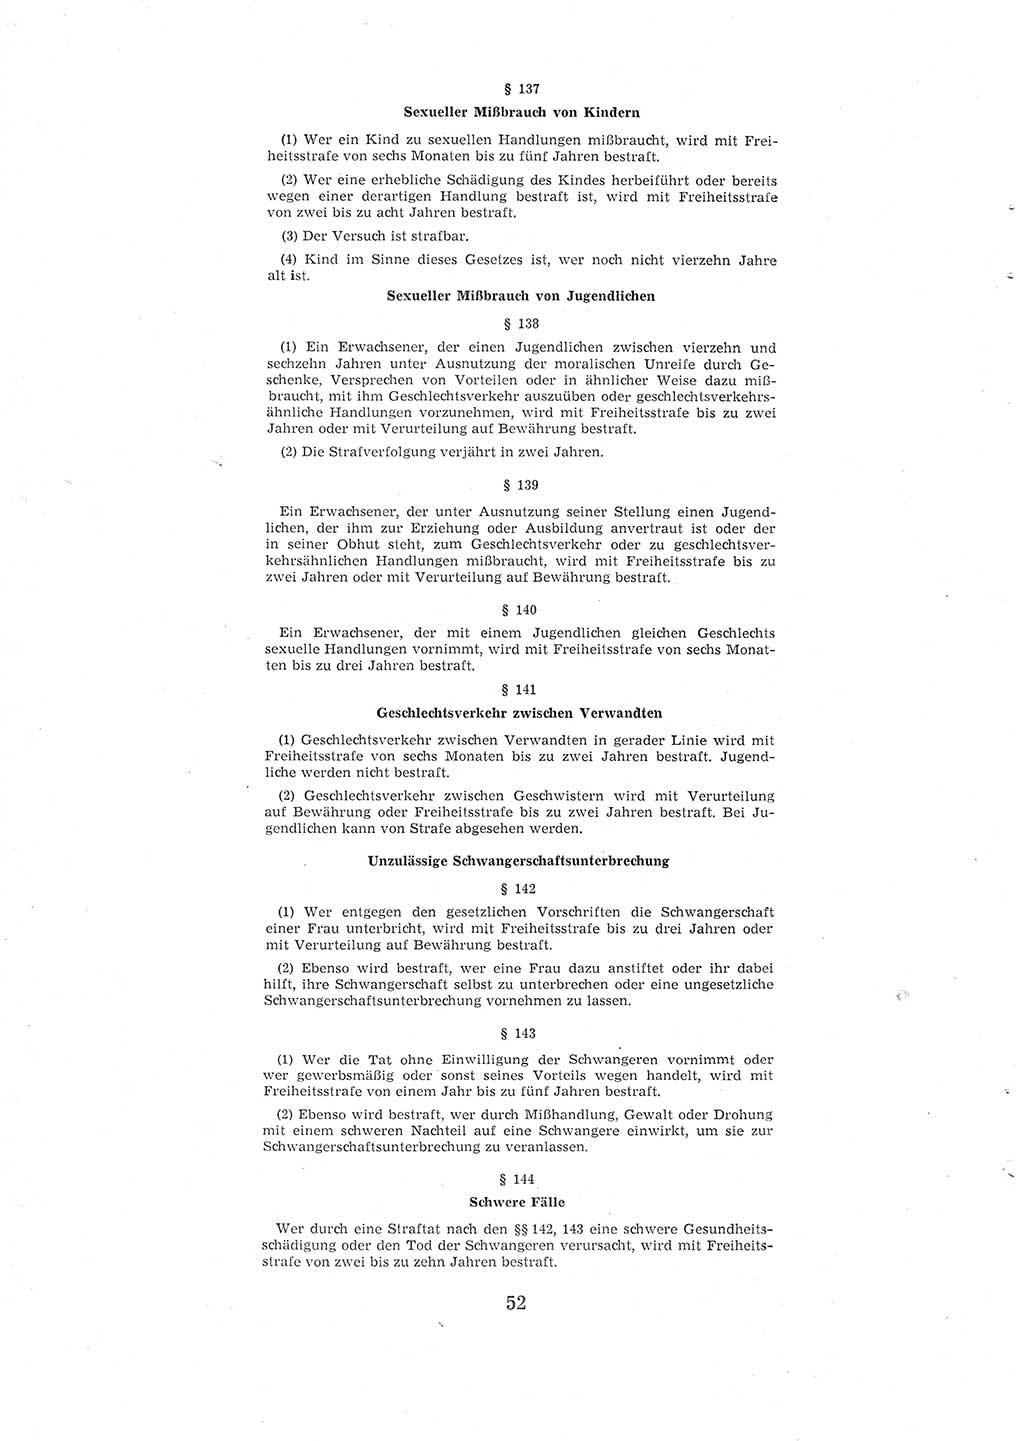 Entwurf des Strafgesetzbuches (StGB) der Deutschen Demokratischen Republik (DDR) 1967, Seite 52 (Entw. StGB DDR 1967, S. 52)